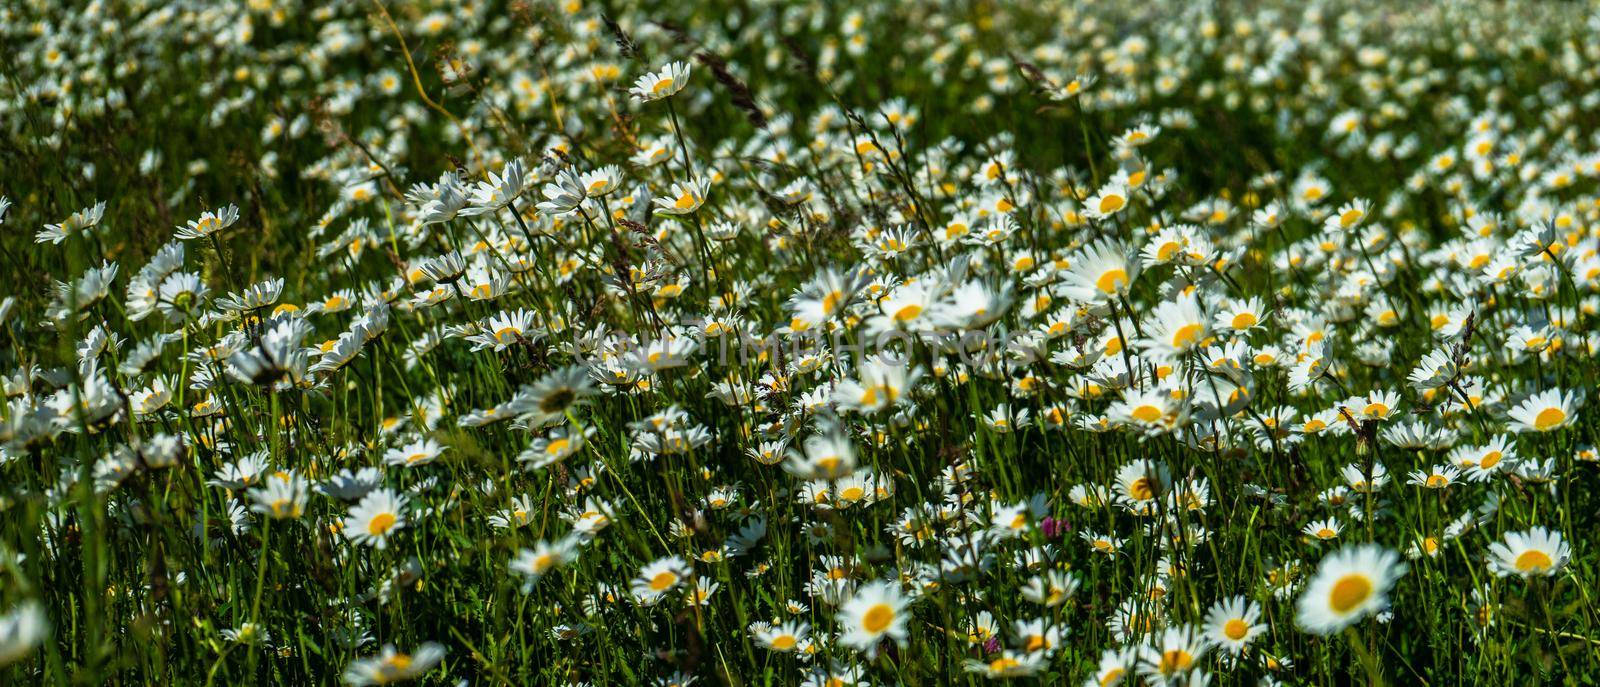 Summer wild meadow by Elet